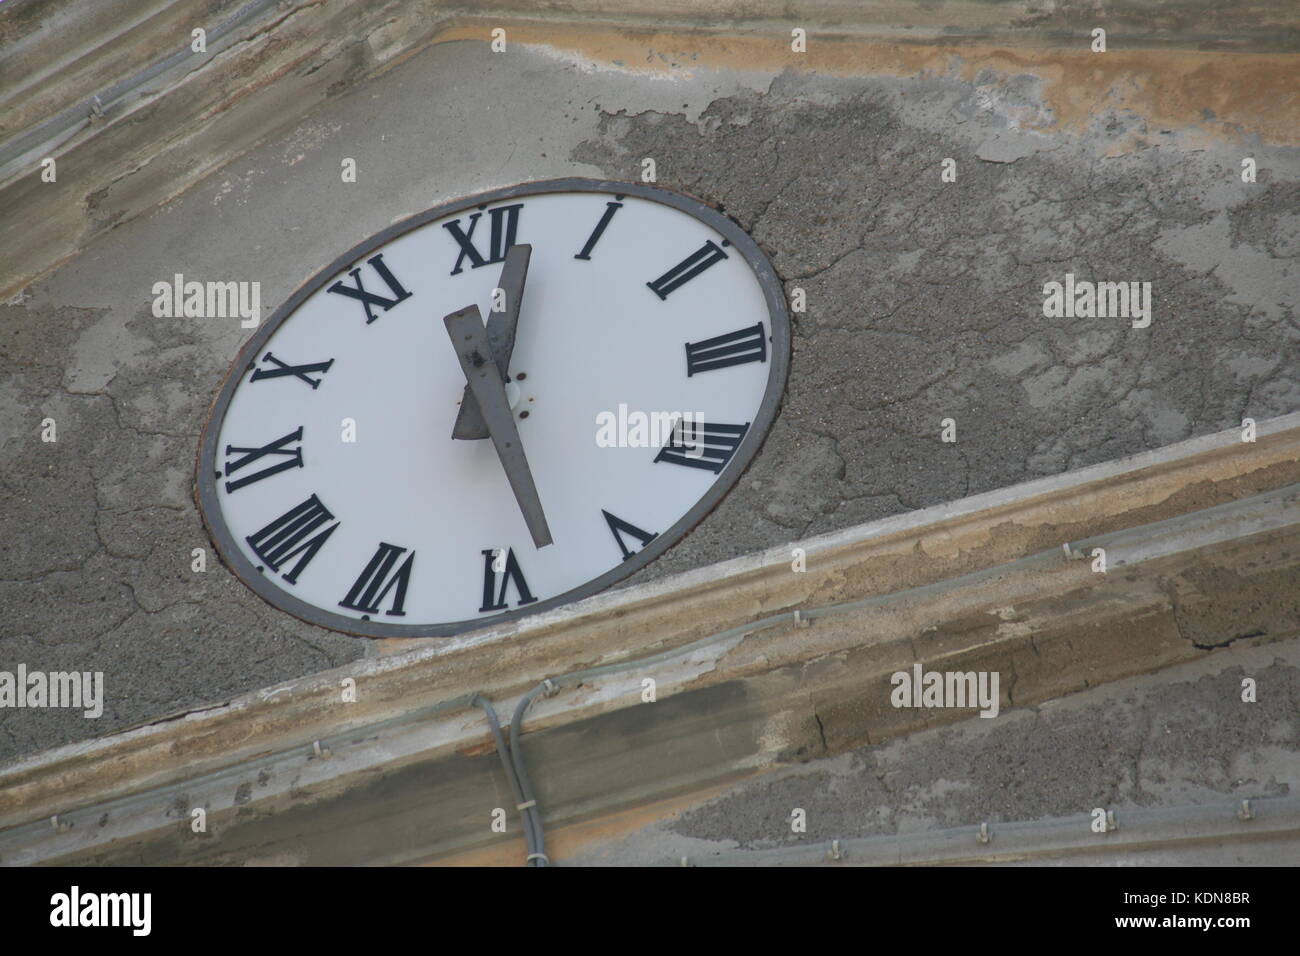 Uhr mit römischen Zahlen - Horloge avec chiffres romains Banque D'Images